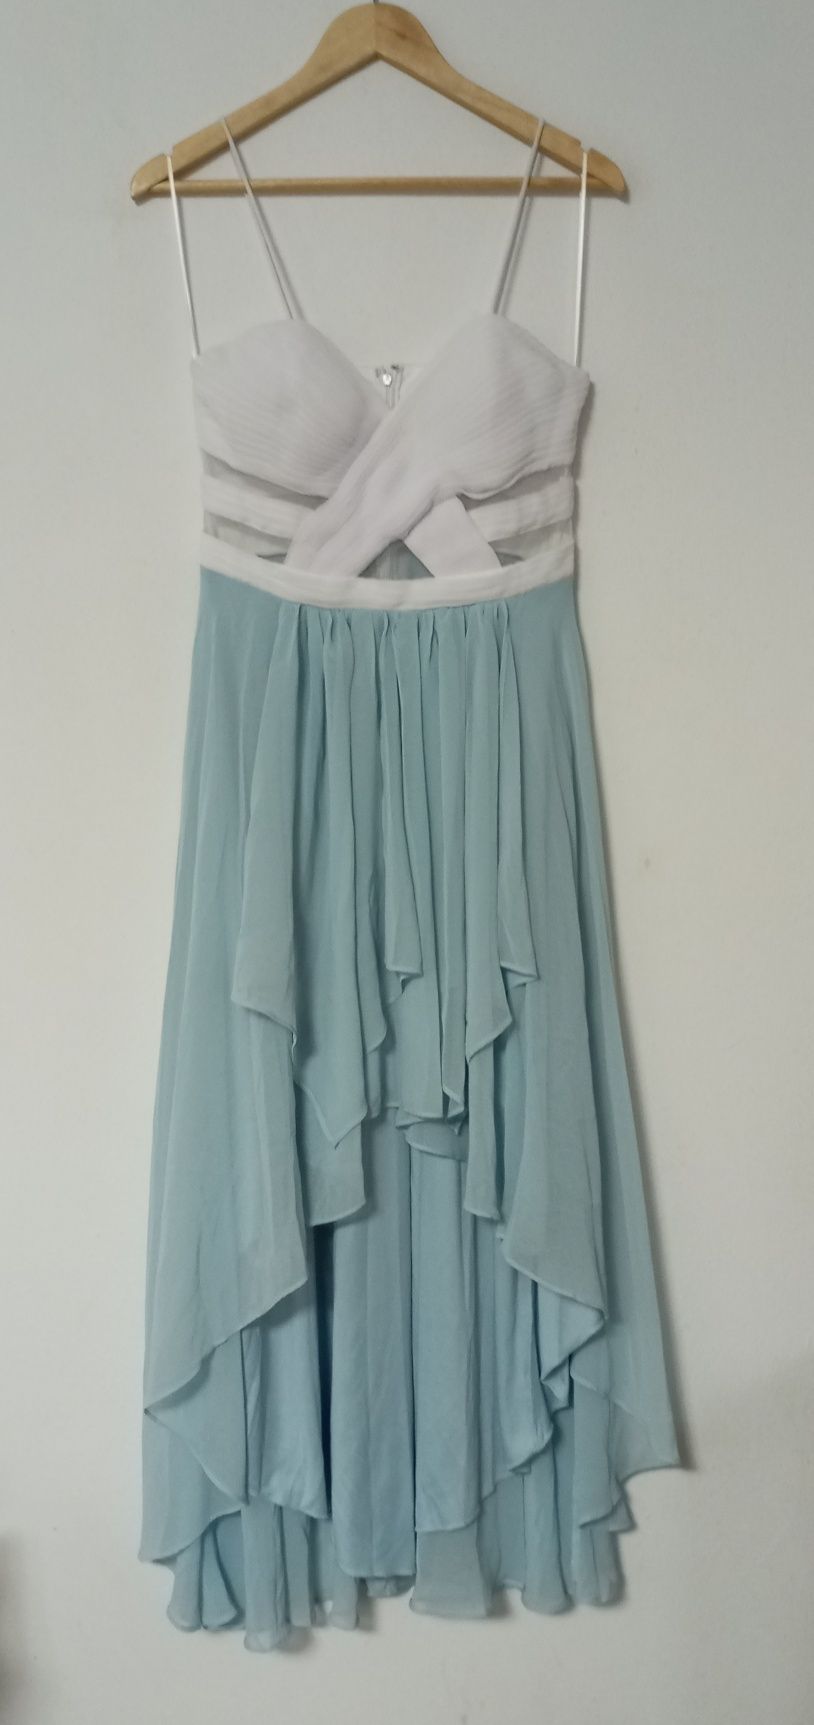 NOWA cudna szyfonowa suknia balowa r. 38 biało-błękitna BONPRIX